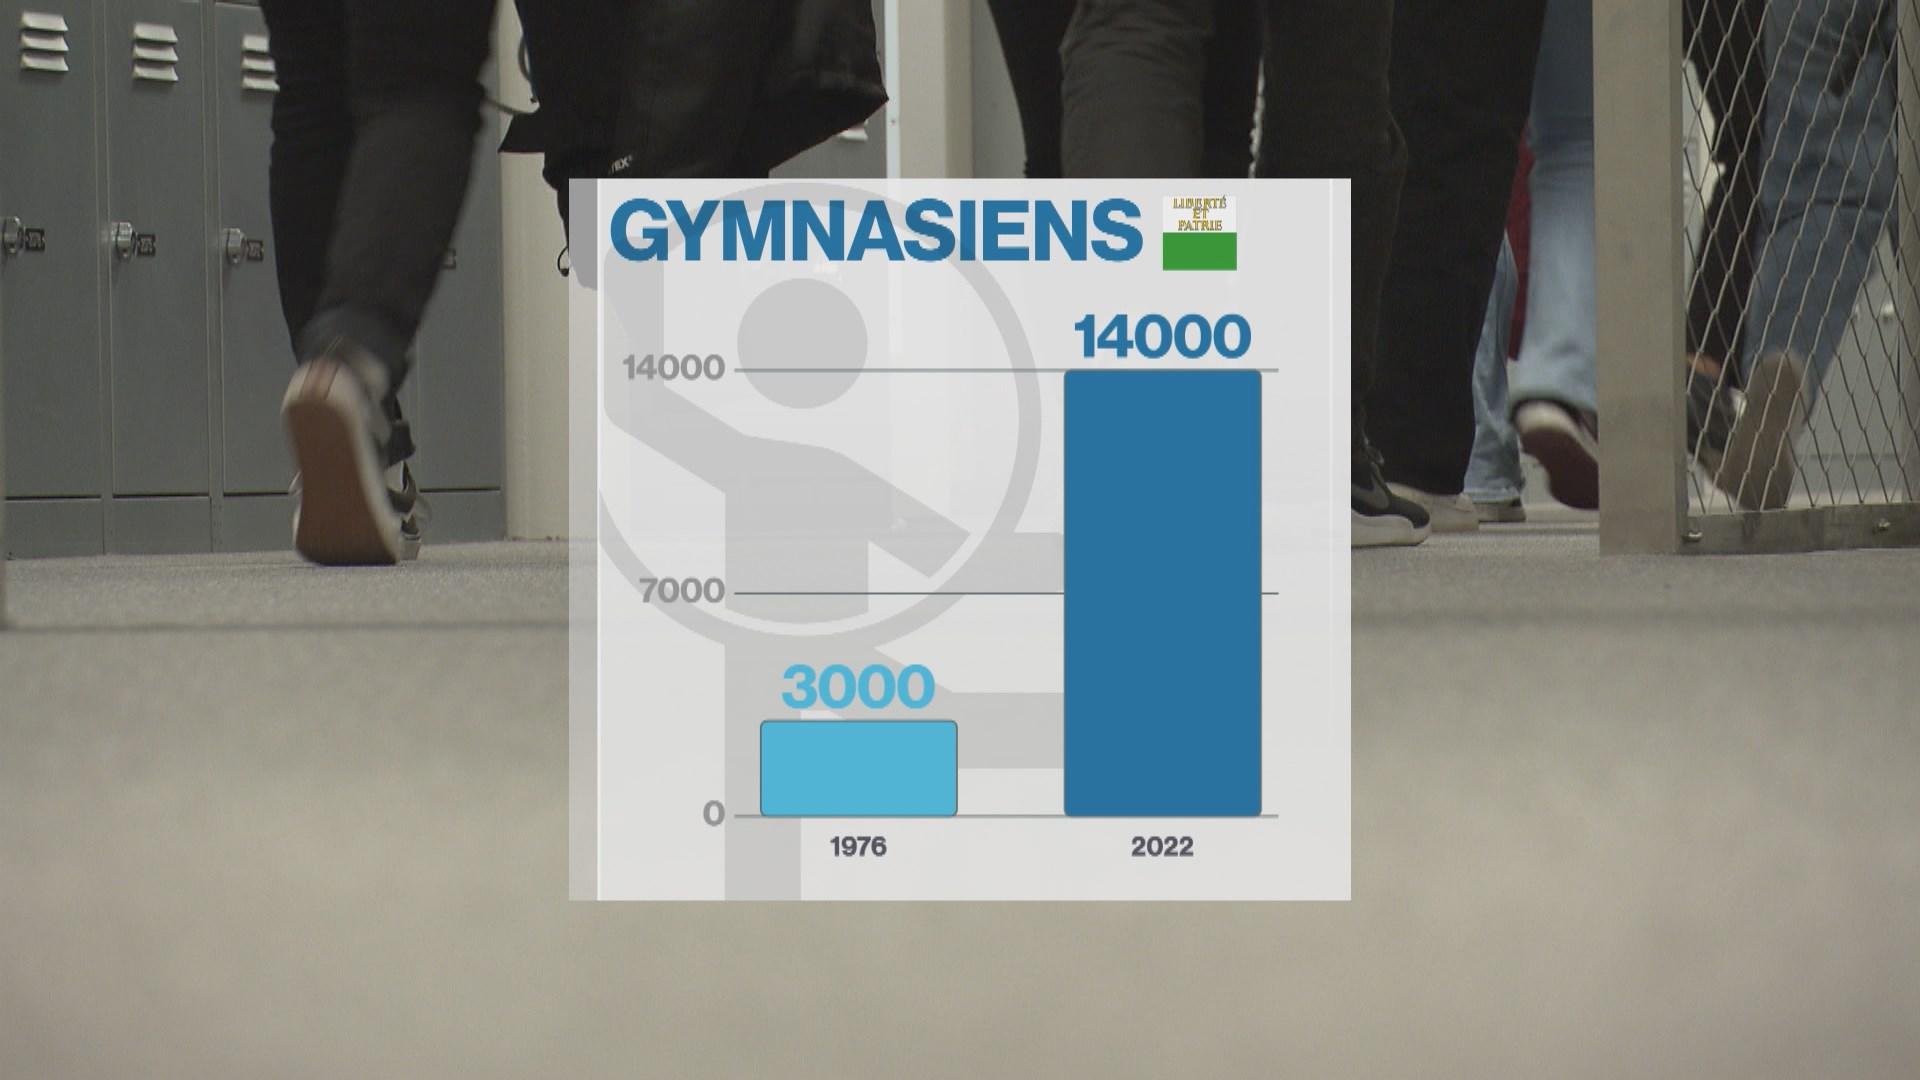 Le nombre d'élèves dans les gymnases vaudois est passé d'environ 3000 en 1976 à plus de 14'000 en 2022. [RTS]